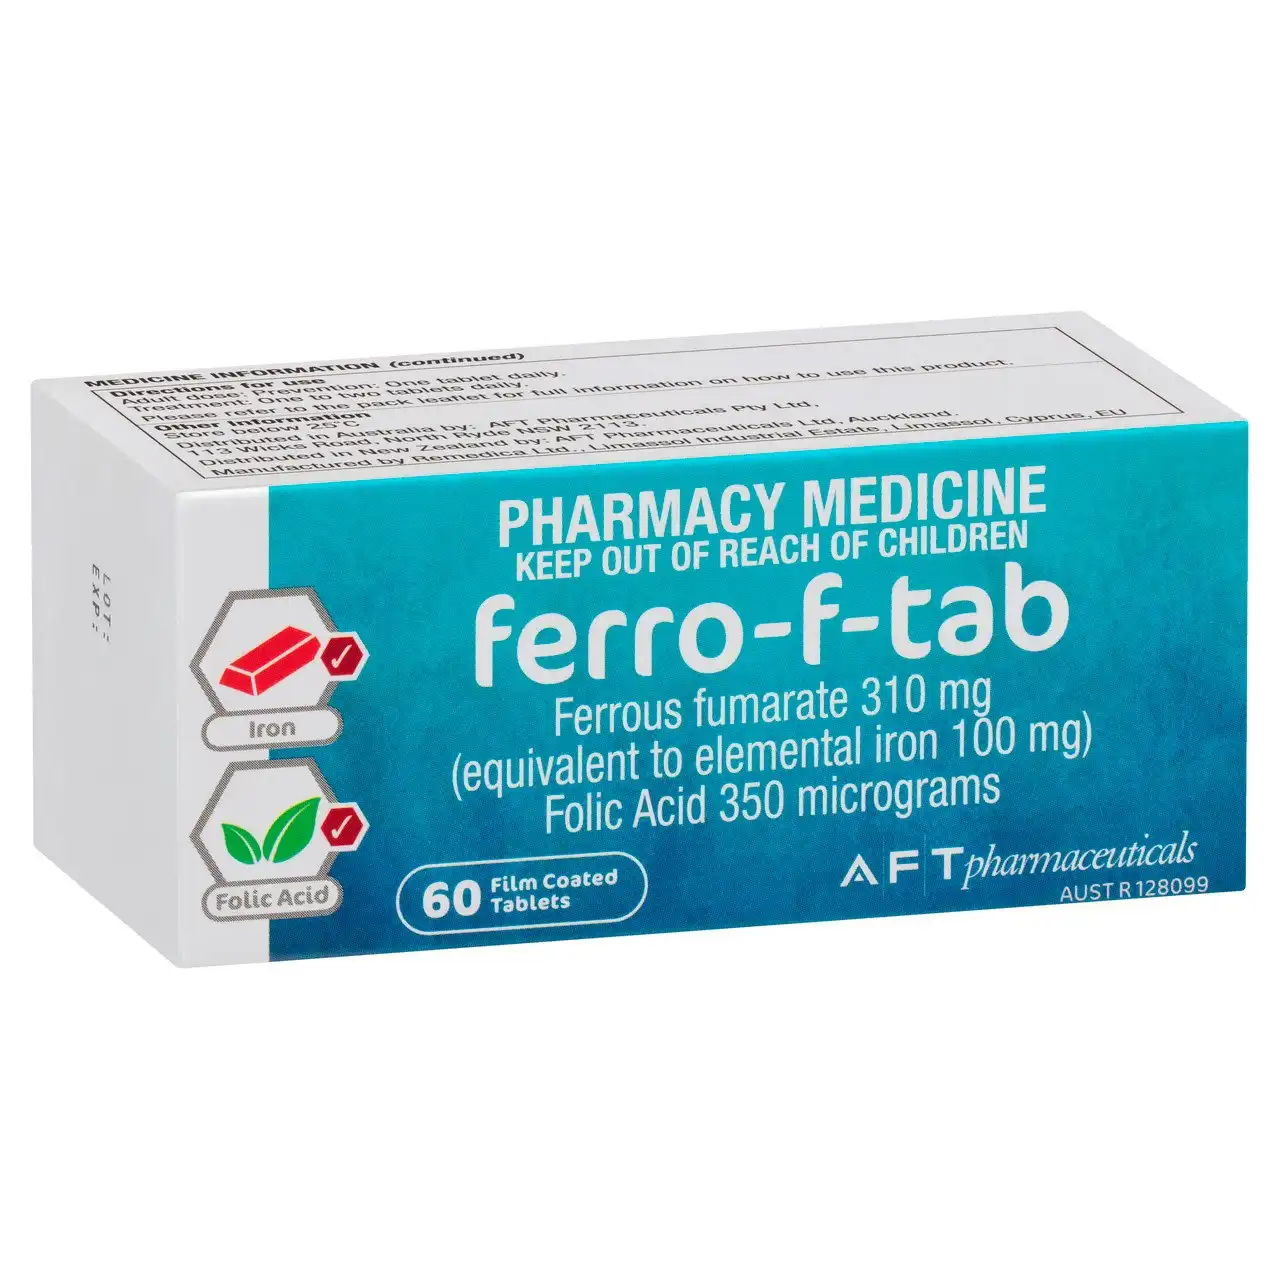 Ferro-F-Tab 310mg 60 Film Coated Tablets